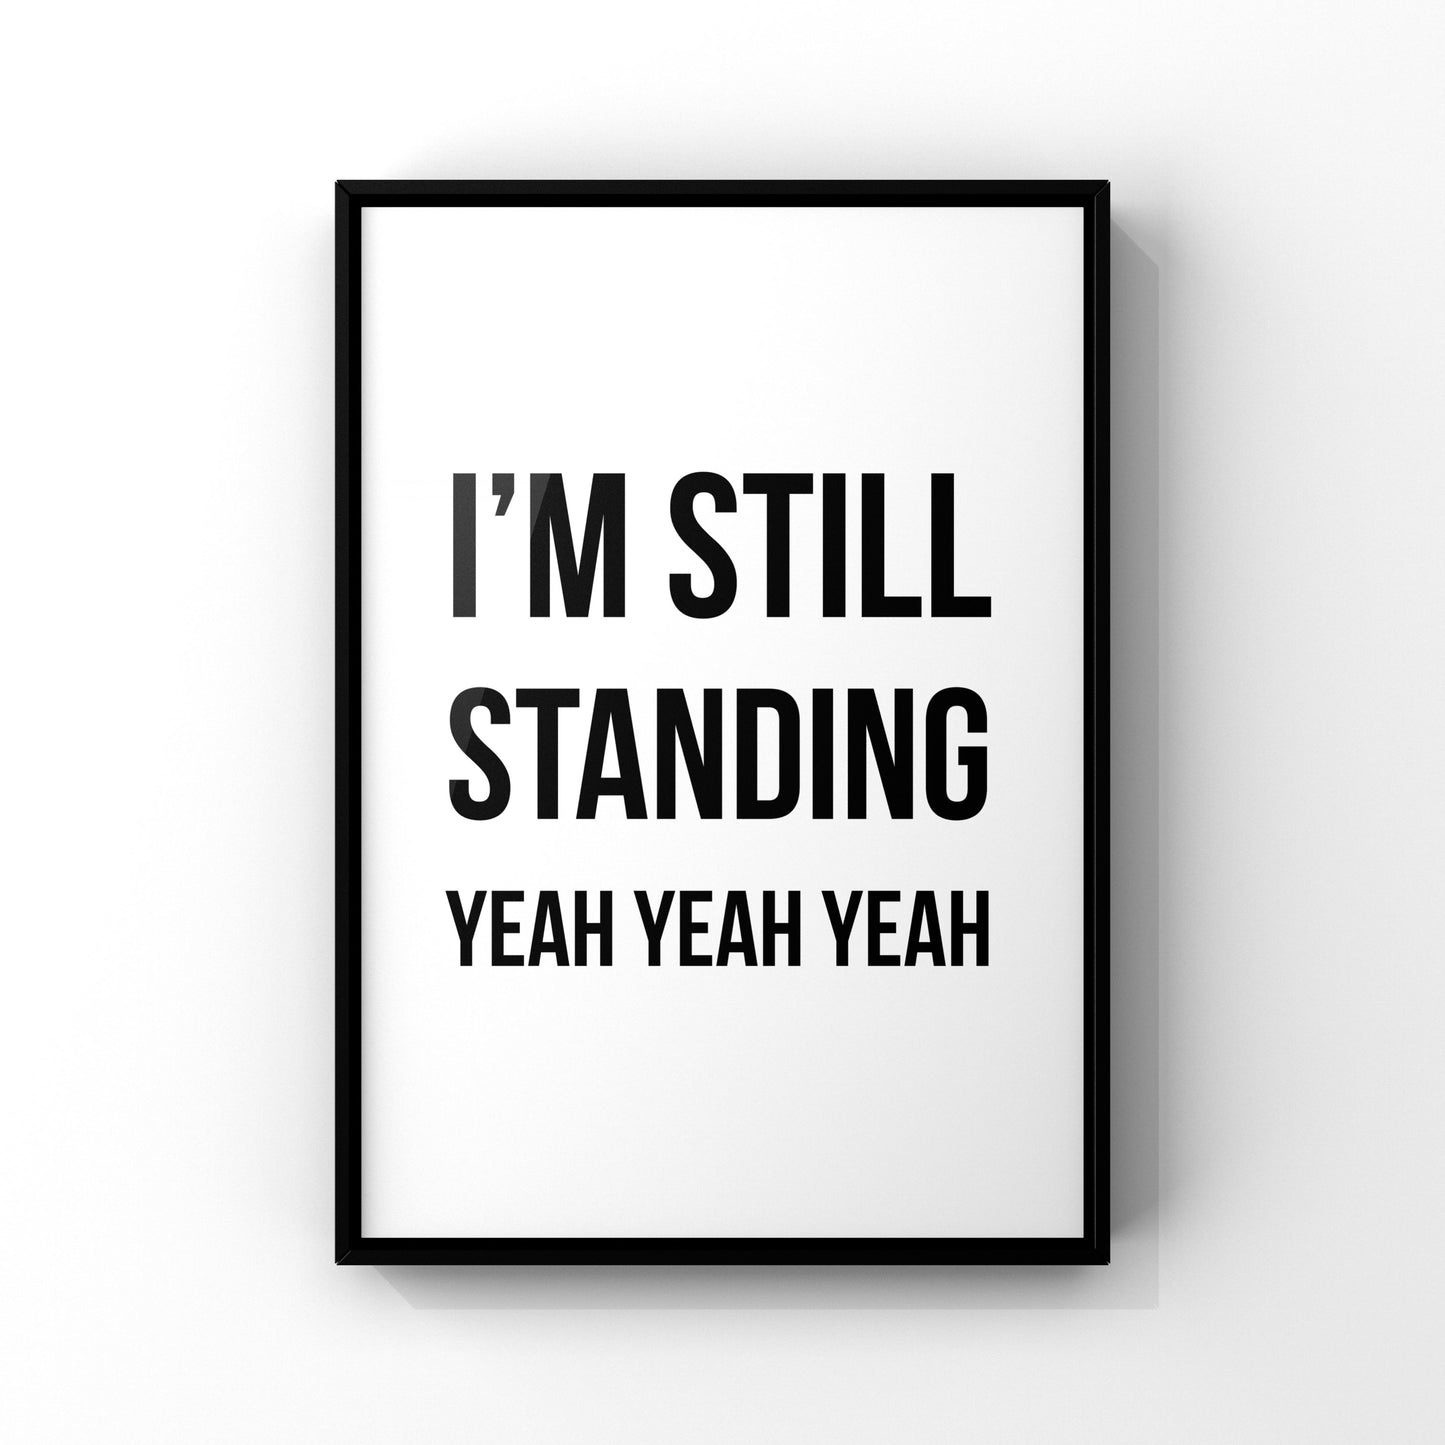 I’m still standing 2